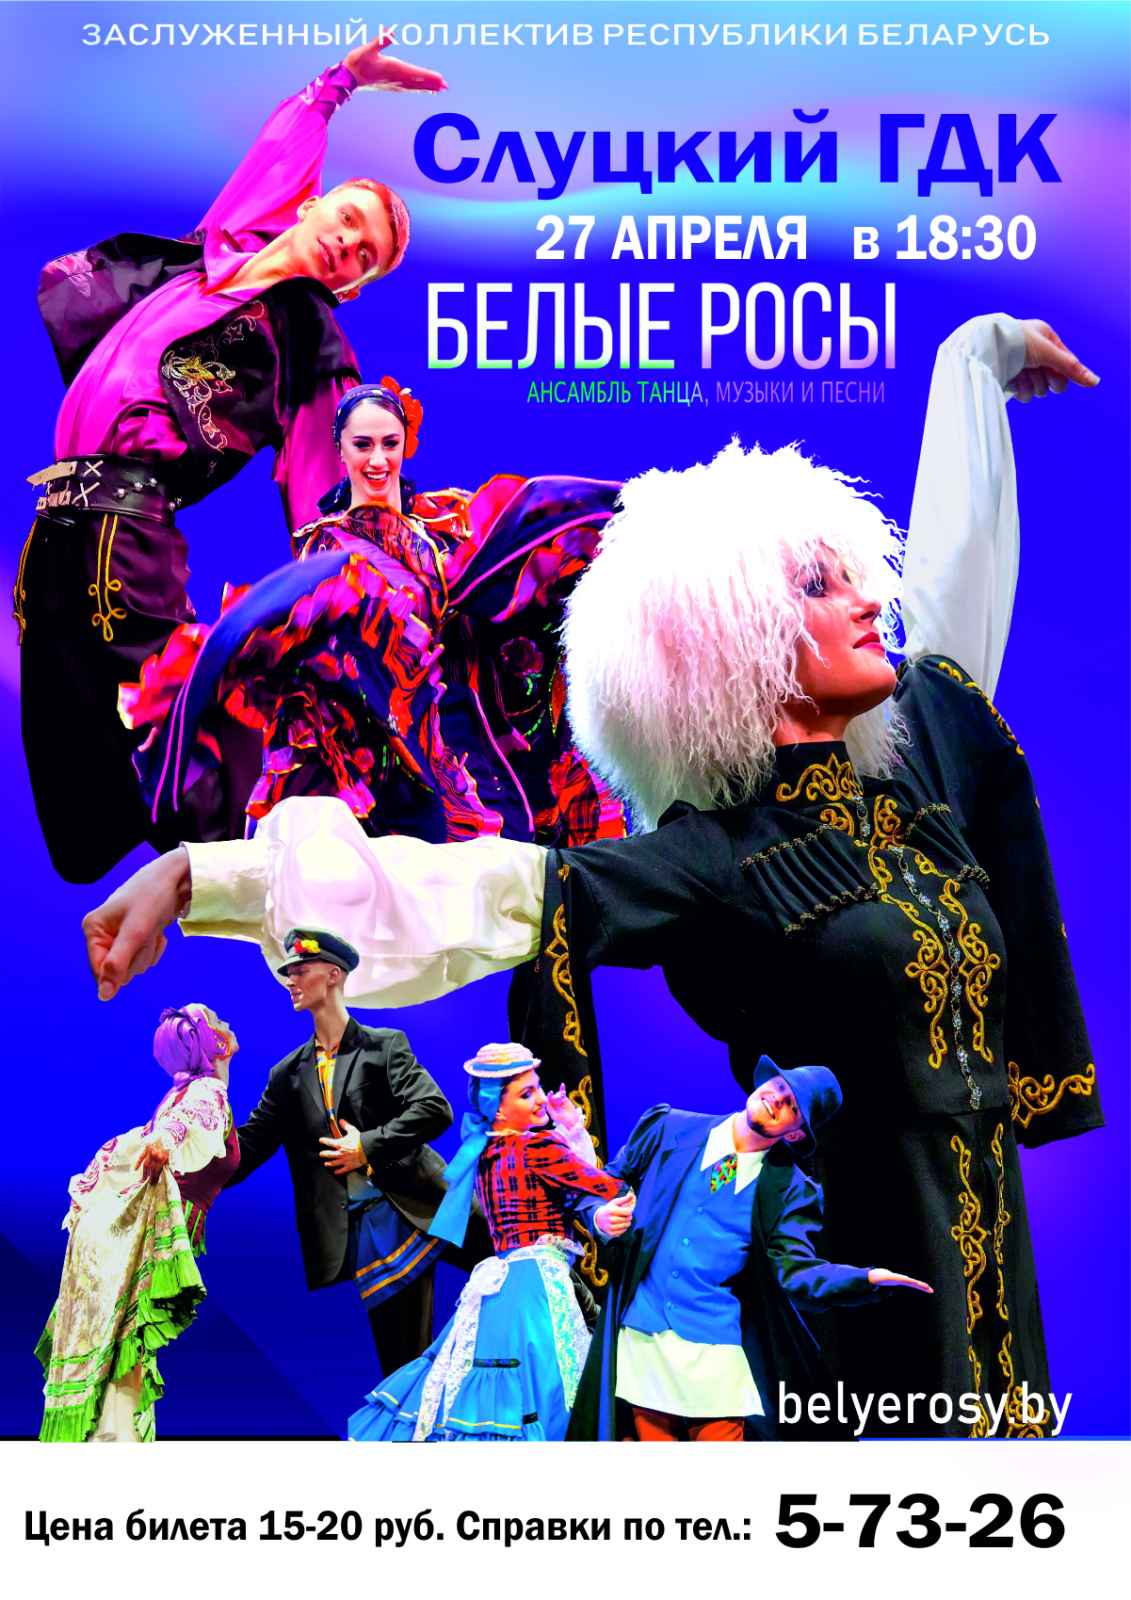 Ансамбль танца, музыки и песни «Белые росы» выступит в Слуцке 27 апреля